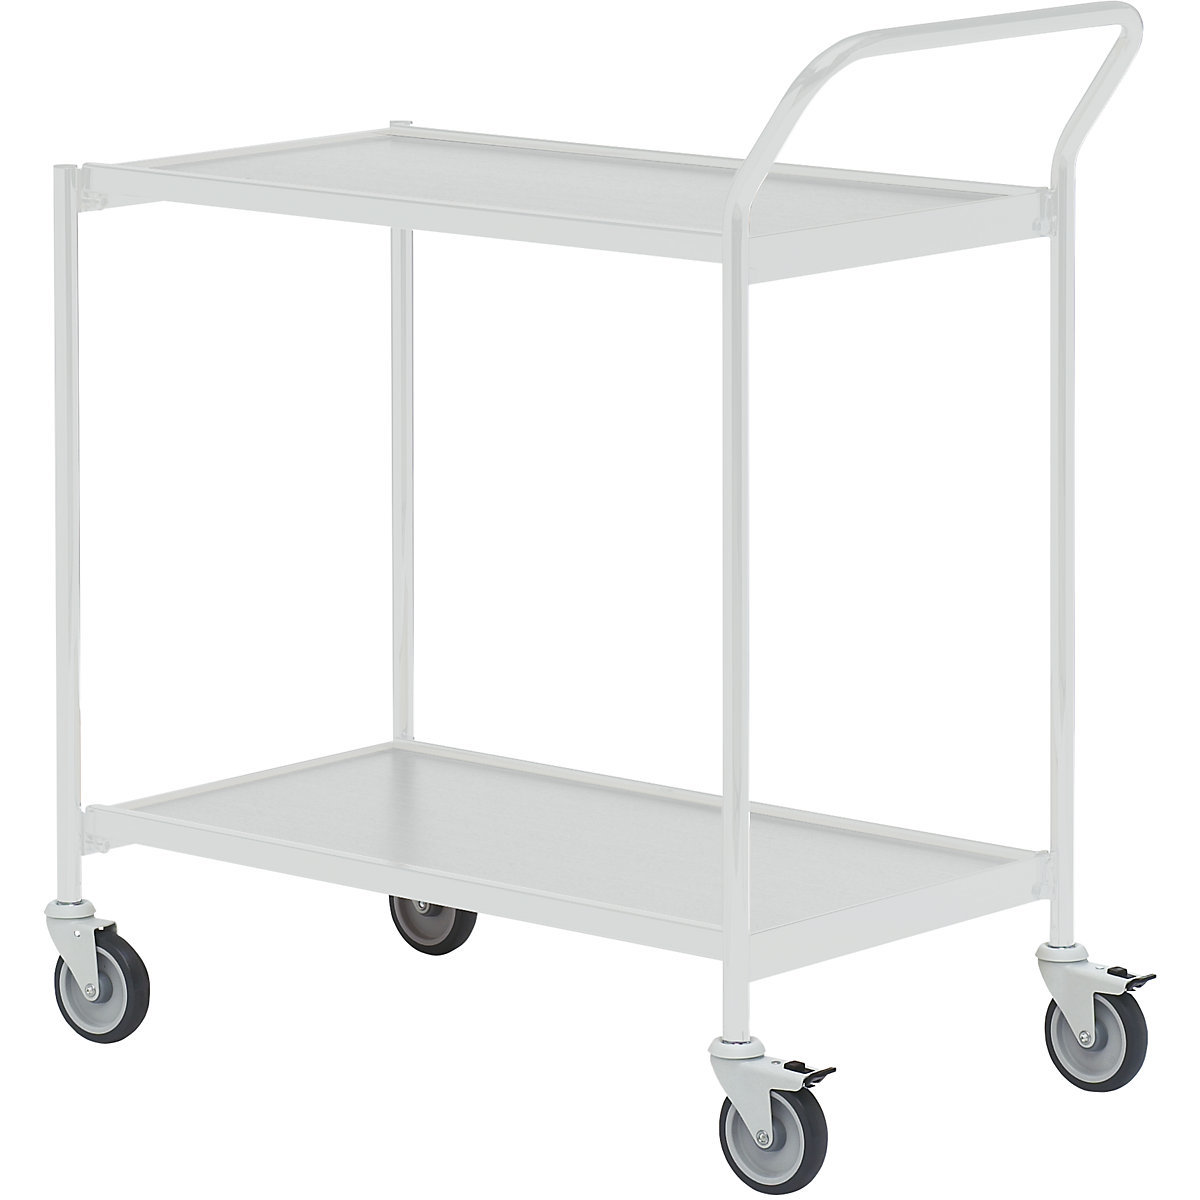 Stolový vozík – HelgeNyberg, 2 etáže, d x š 800 x 420 mm, šedá / šedá, od 5 ks-40